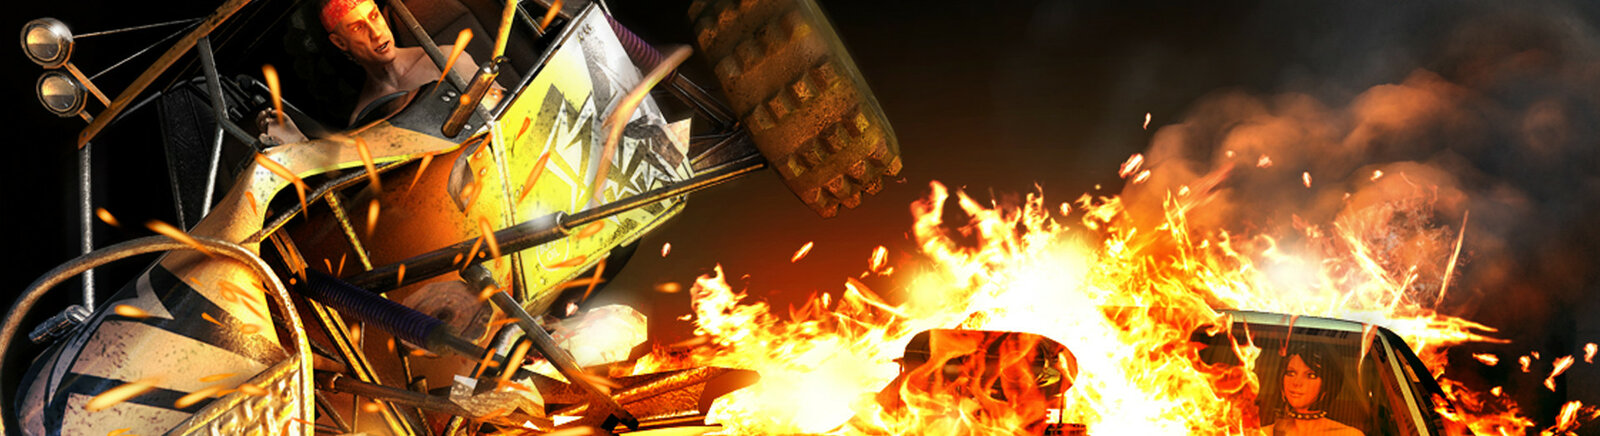 Дата выхода Fireburst  на PC, PS3 и Xbox 360 в России и во всем мире